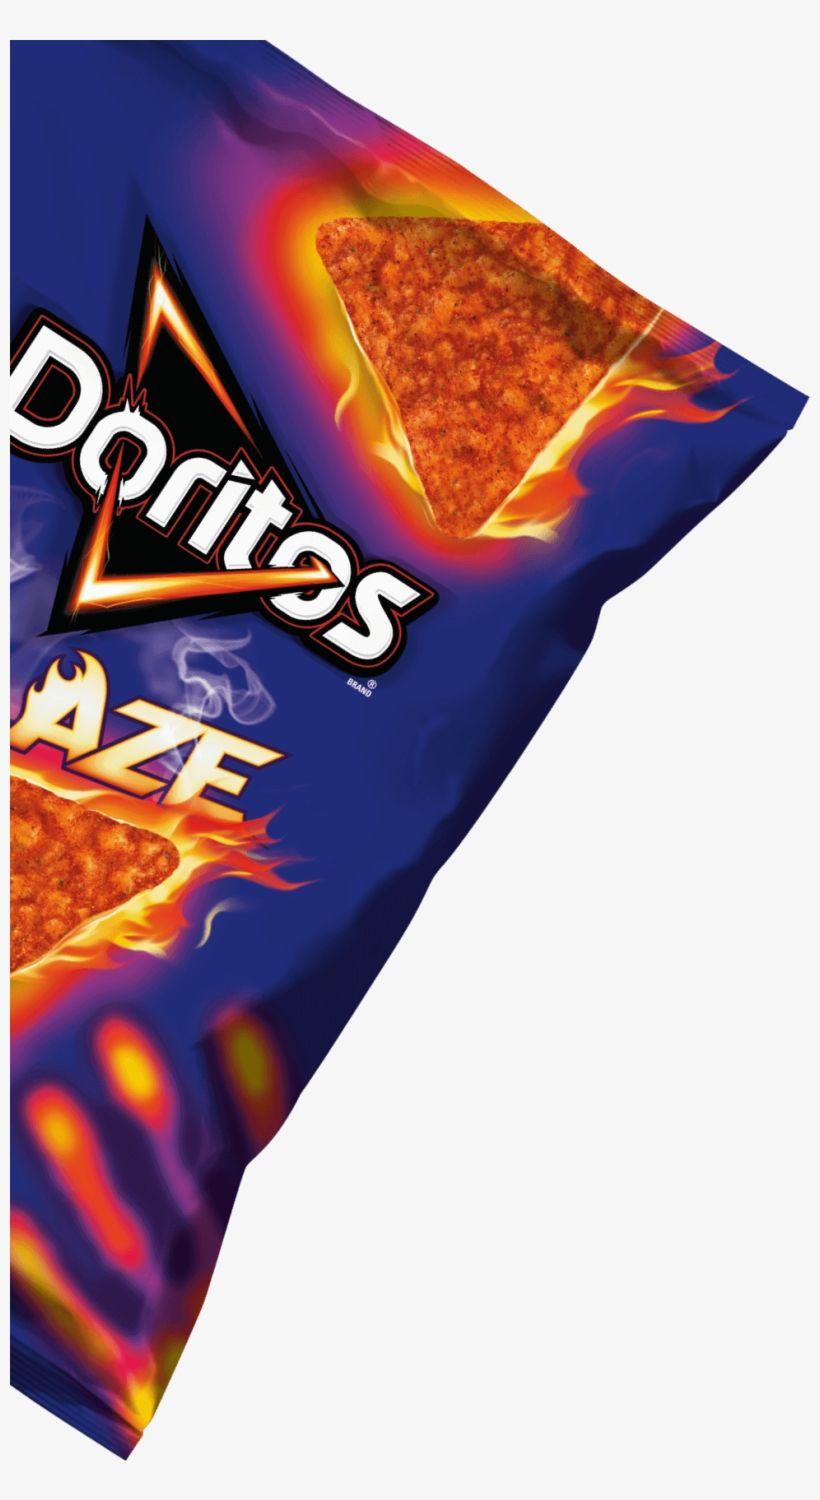 Doritos Chips Logo - Doritos Png Logo Jpg Royalty Free - Doritos Spicy Nacho Tortilla ...